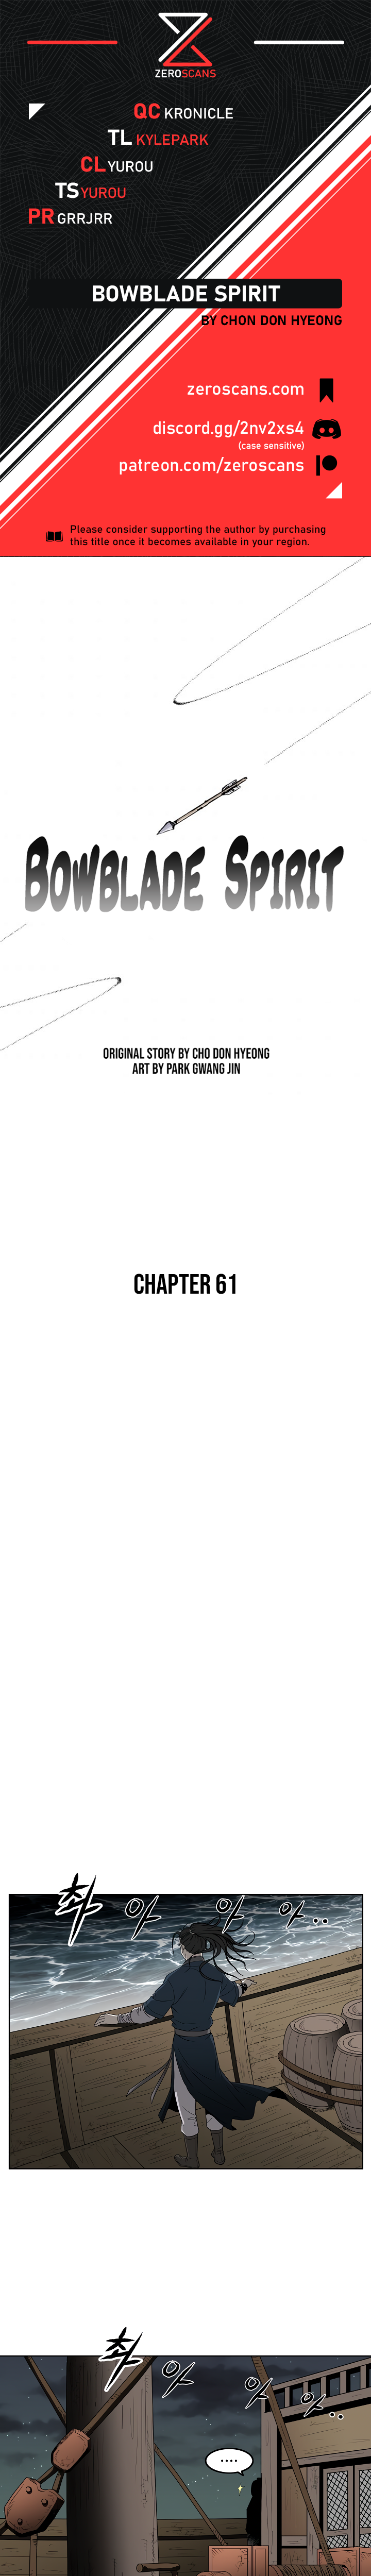 Bowblade Spirit - Chapter 5509 - Image 1